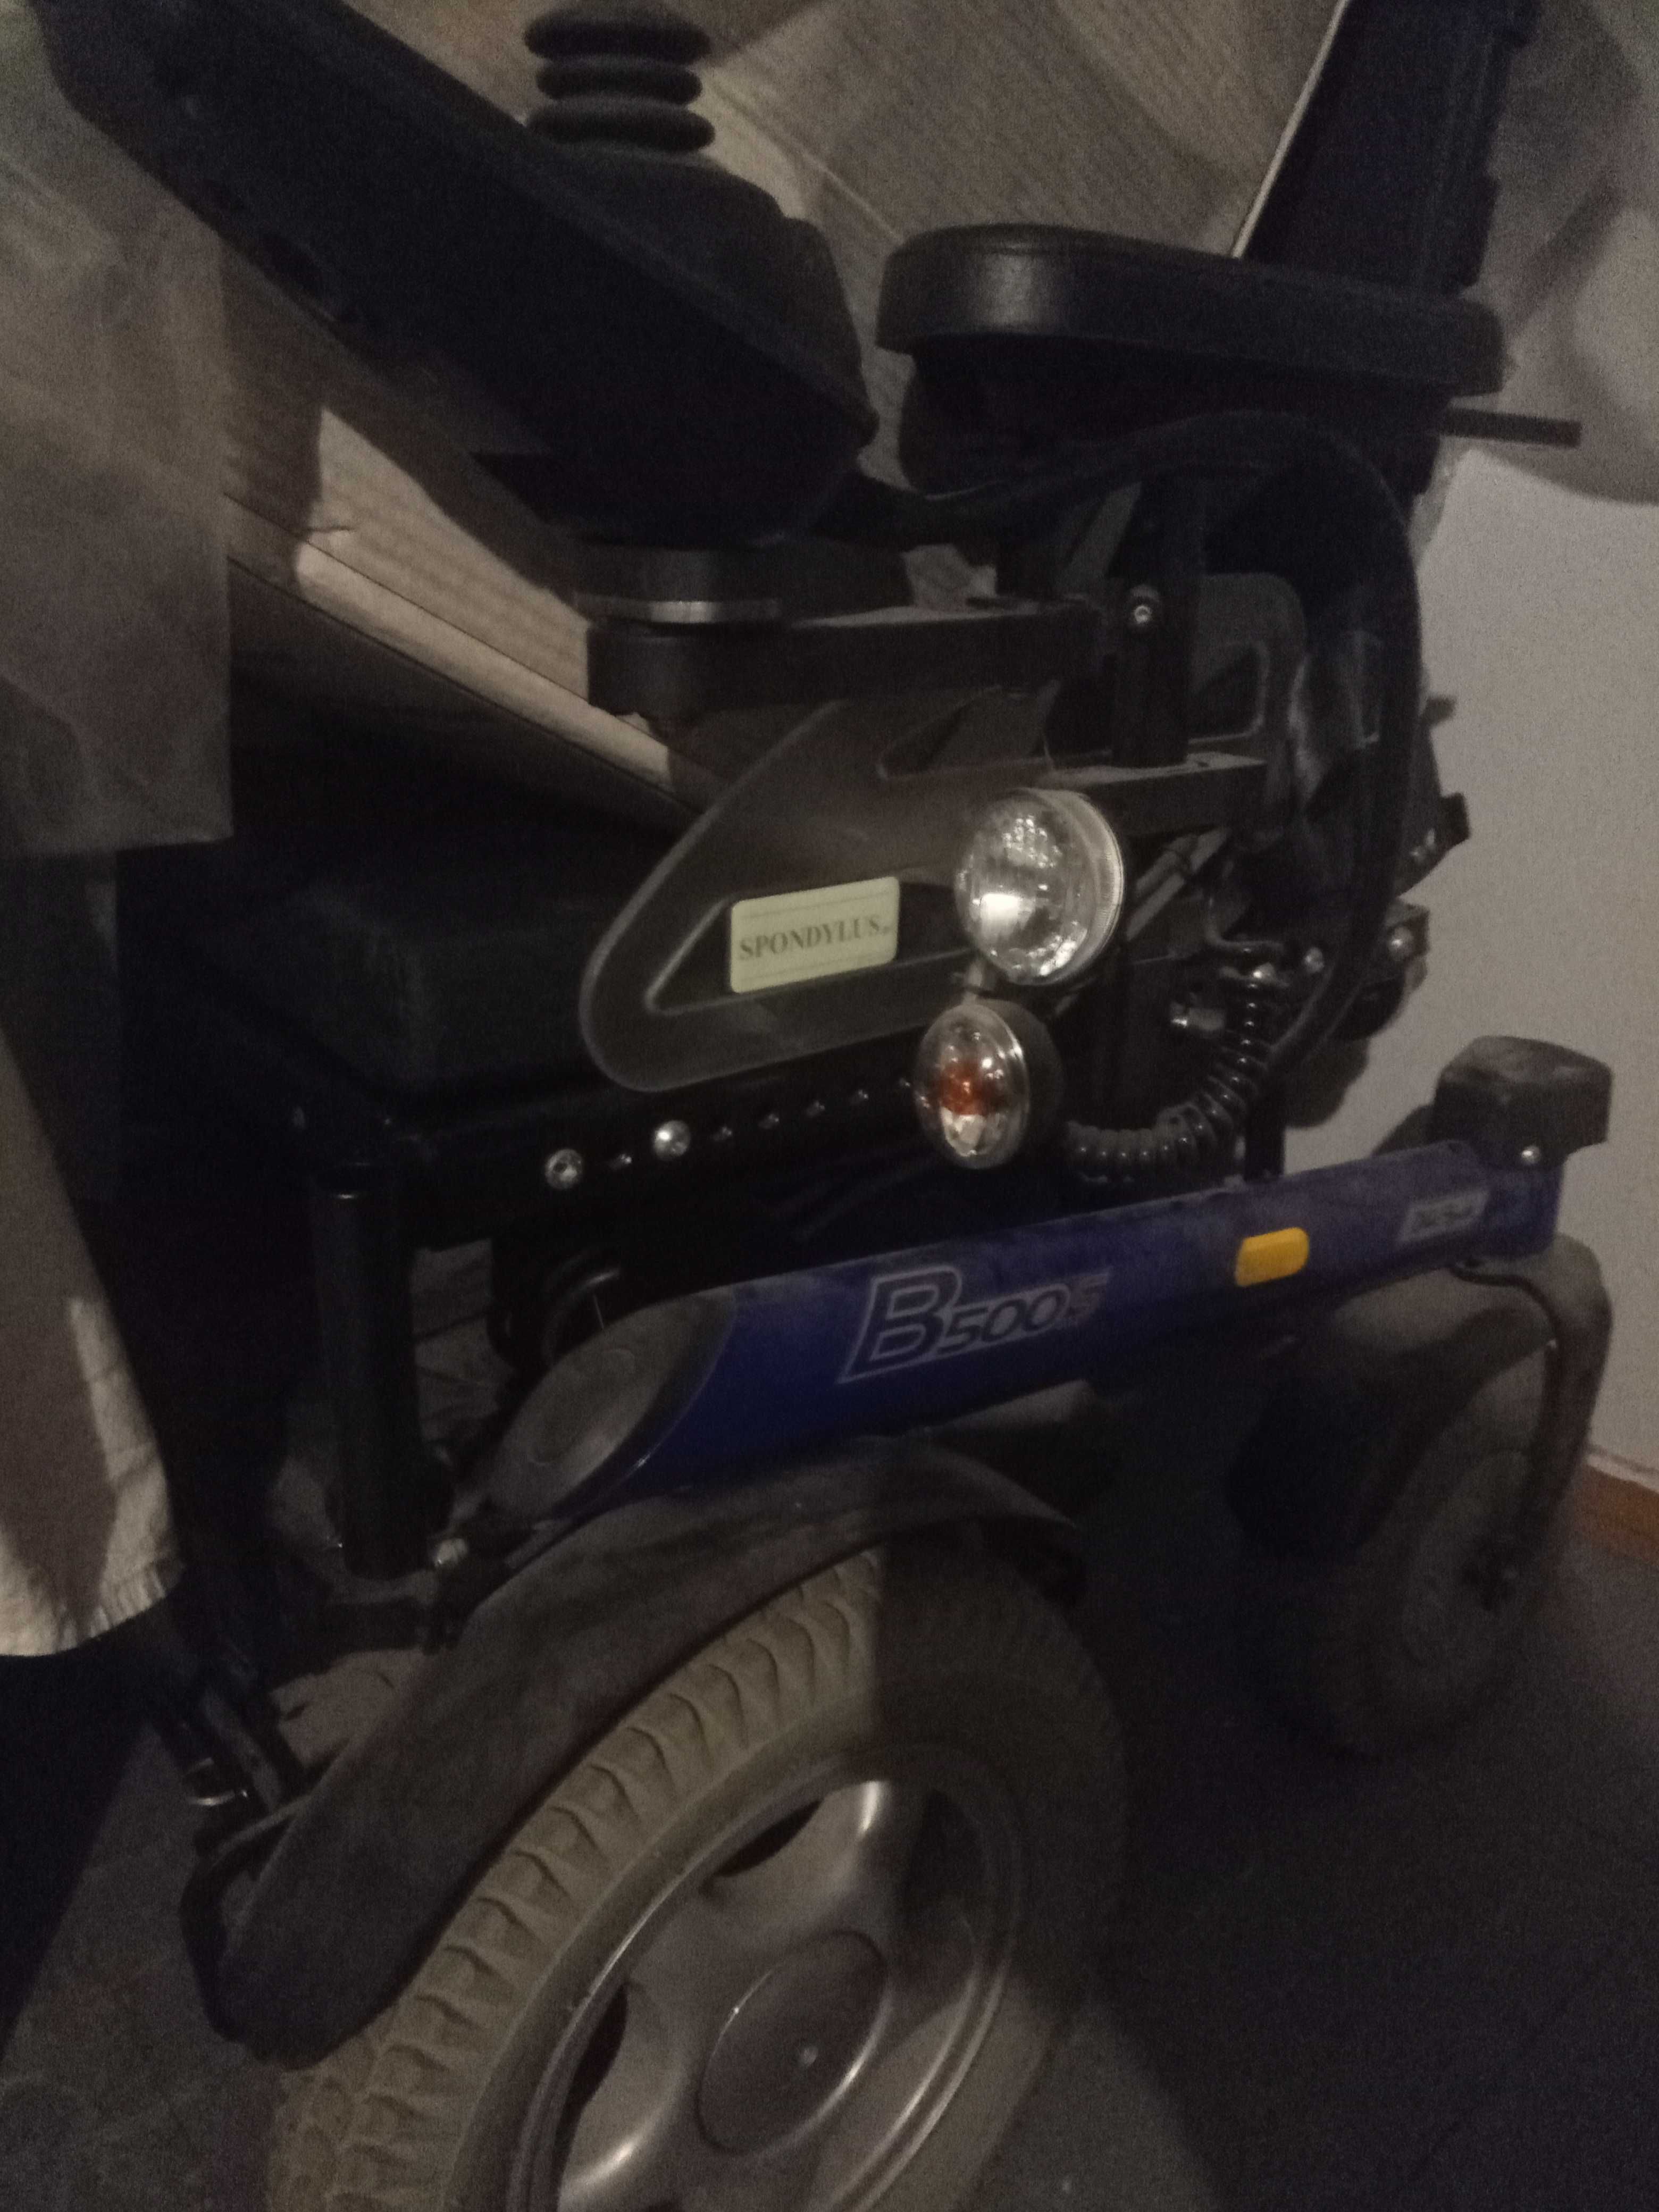 Wózek inwalidzki elektryczny spondylus Otto bock b500s, nieużywany